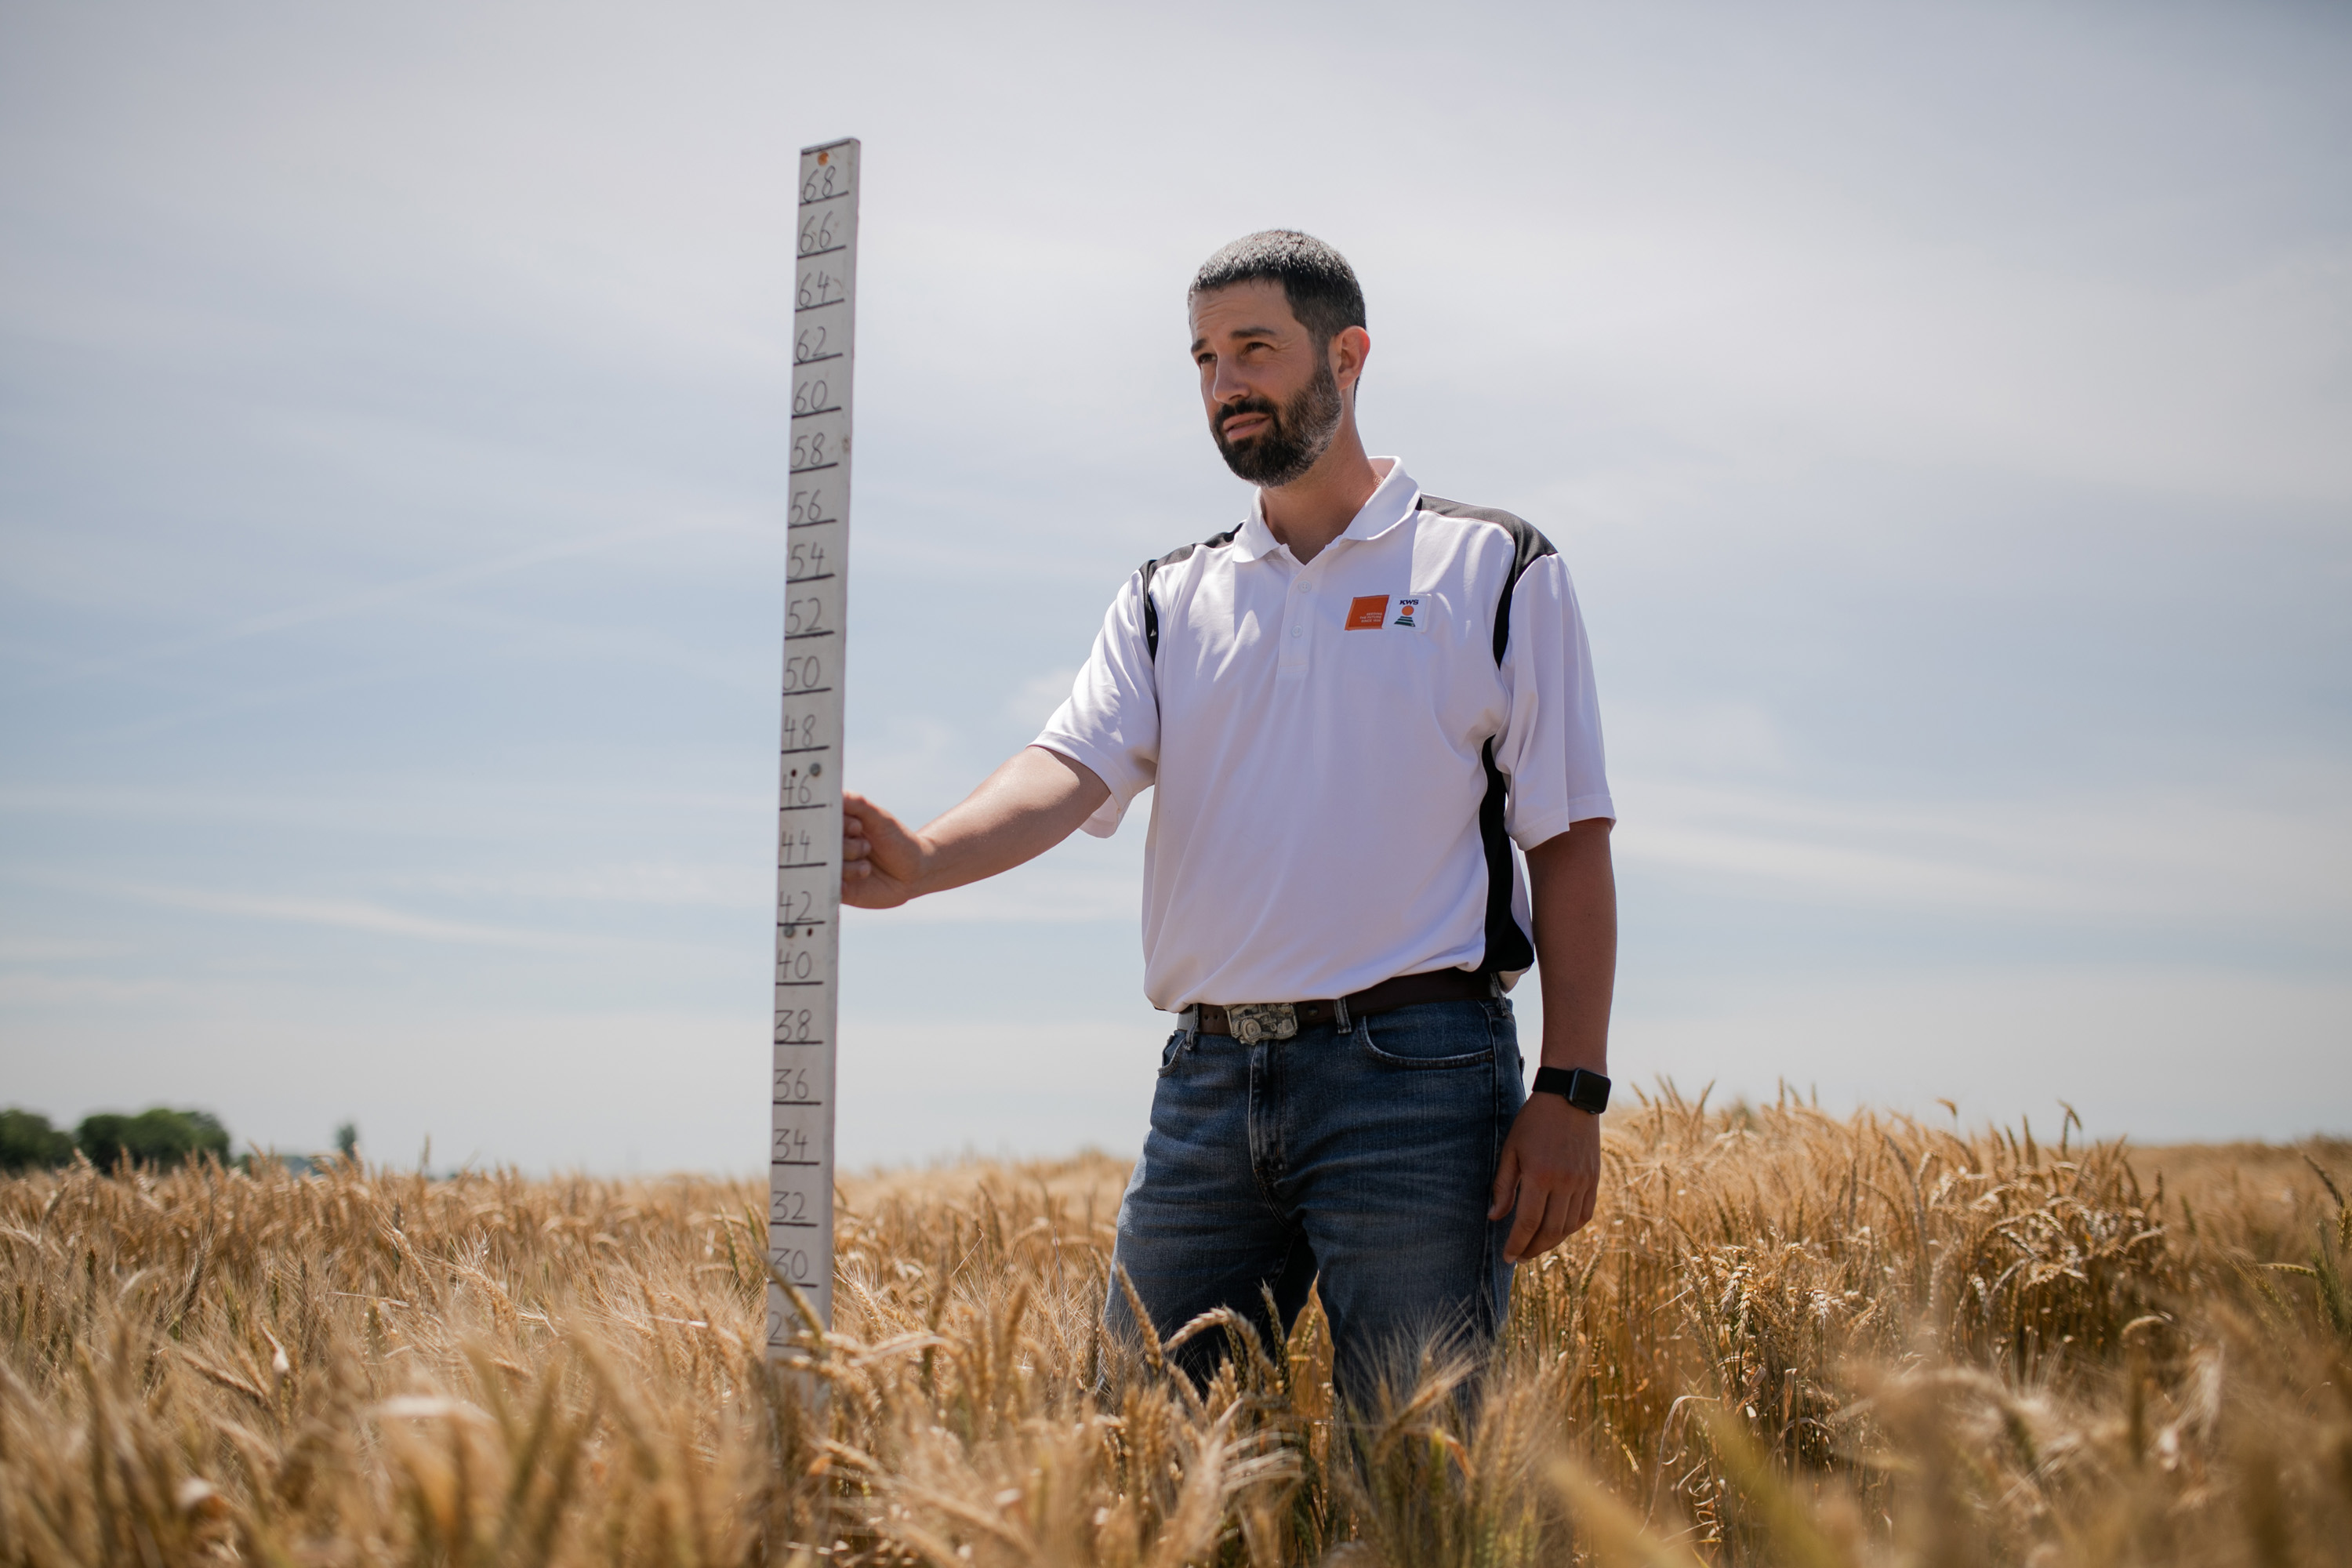 KWS-Weizenzüchter Mark Christopher steht mit einem großen Zollstock in einem Weizenfeld, um die Höhe der Pflanzen zu bestimmen.